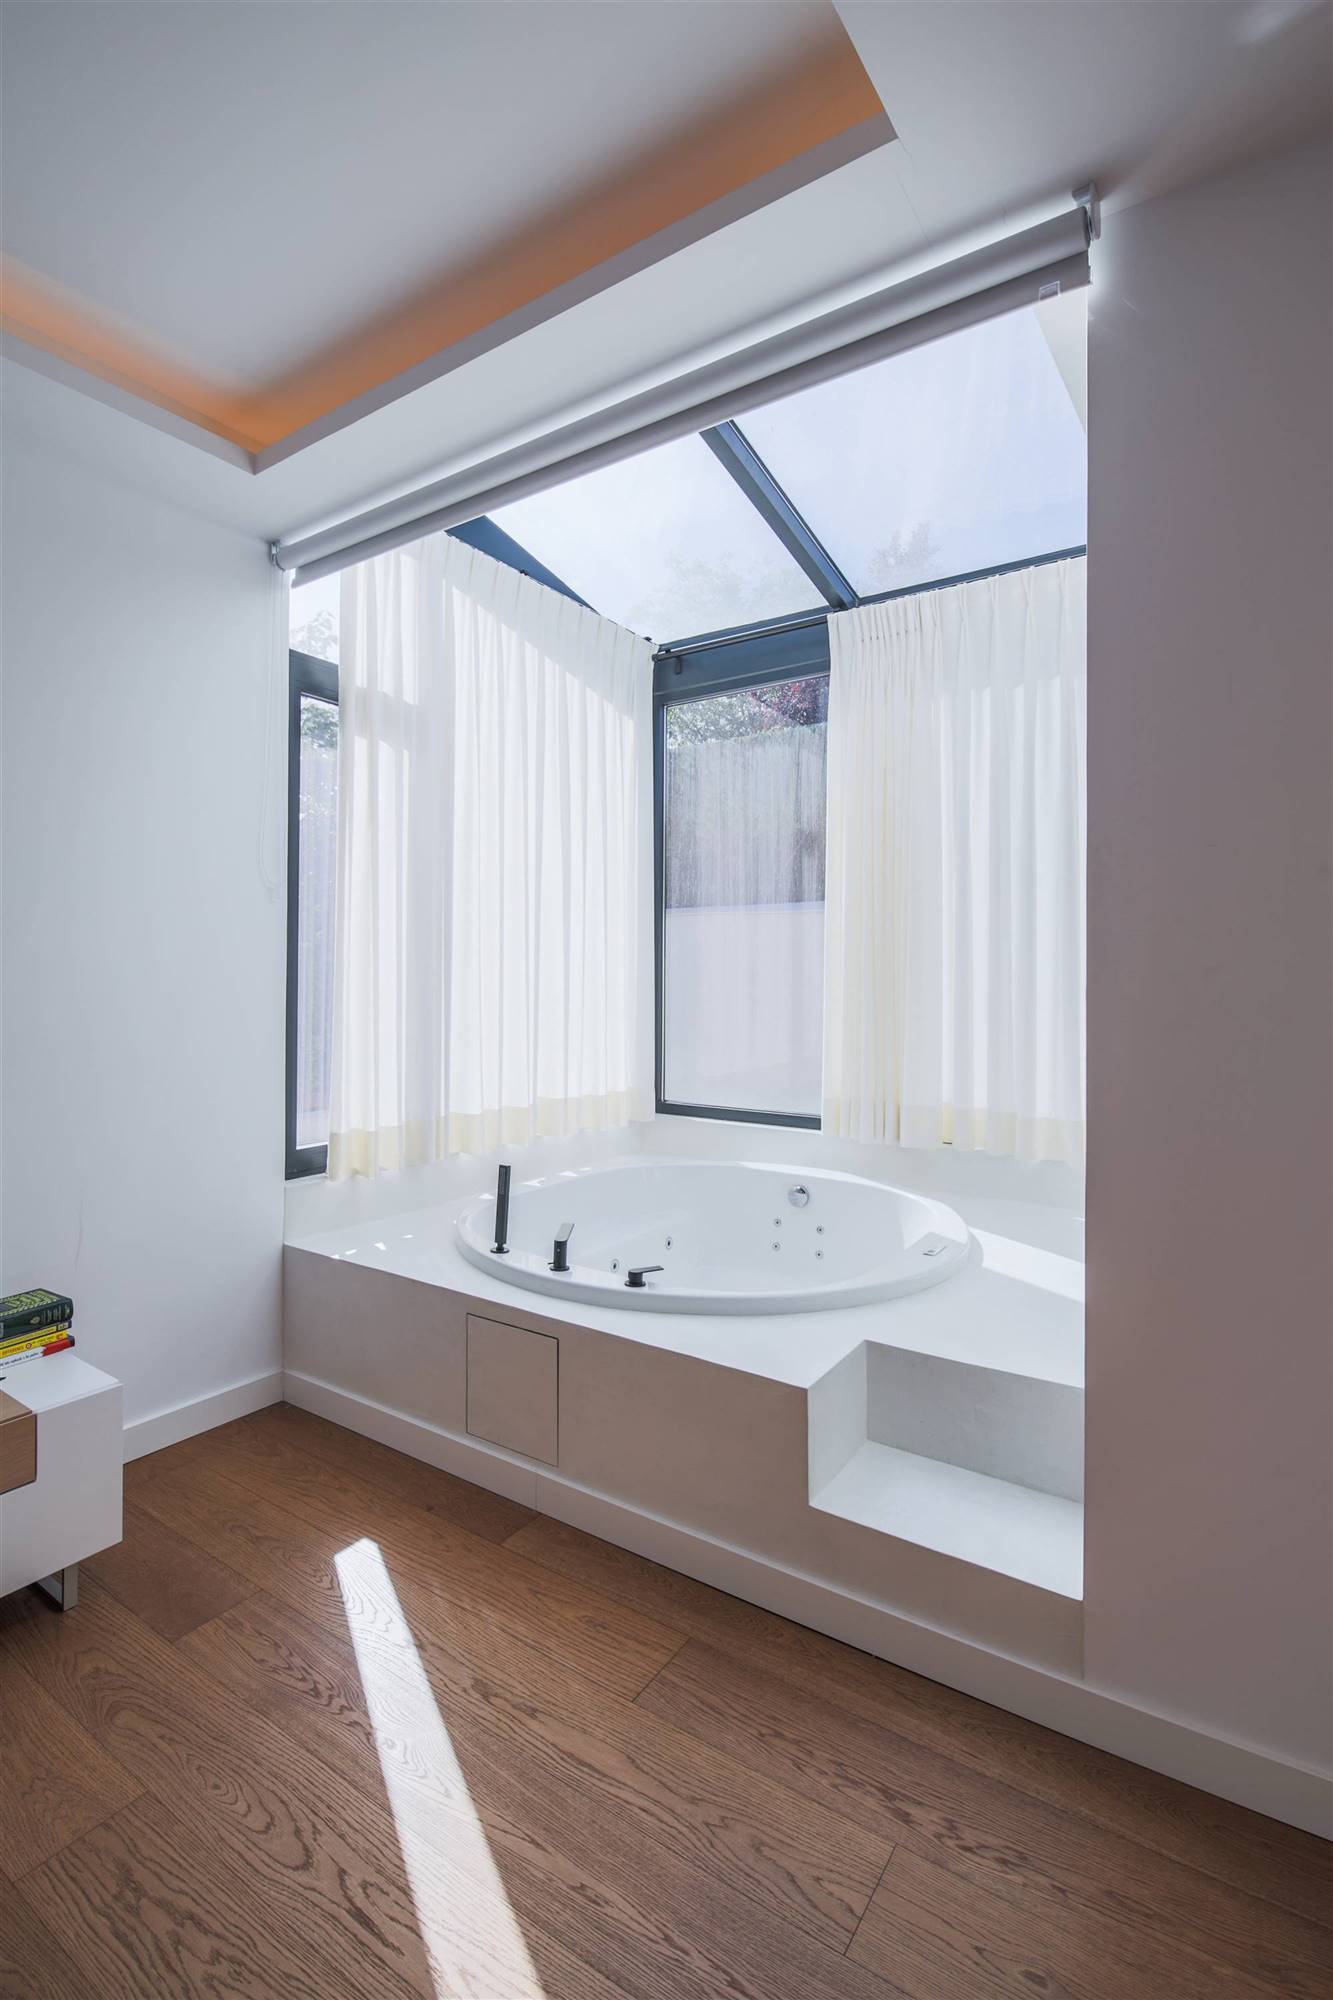 Dormitorio principal en suite de una vivienda unifamiliar en la calle Arturo Soria de Madrid, un proyecto del estudio de interiorismo WINK GROUP.